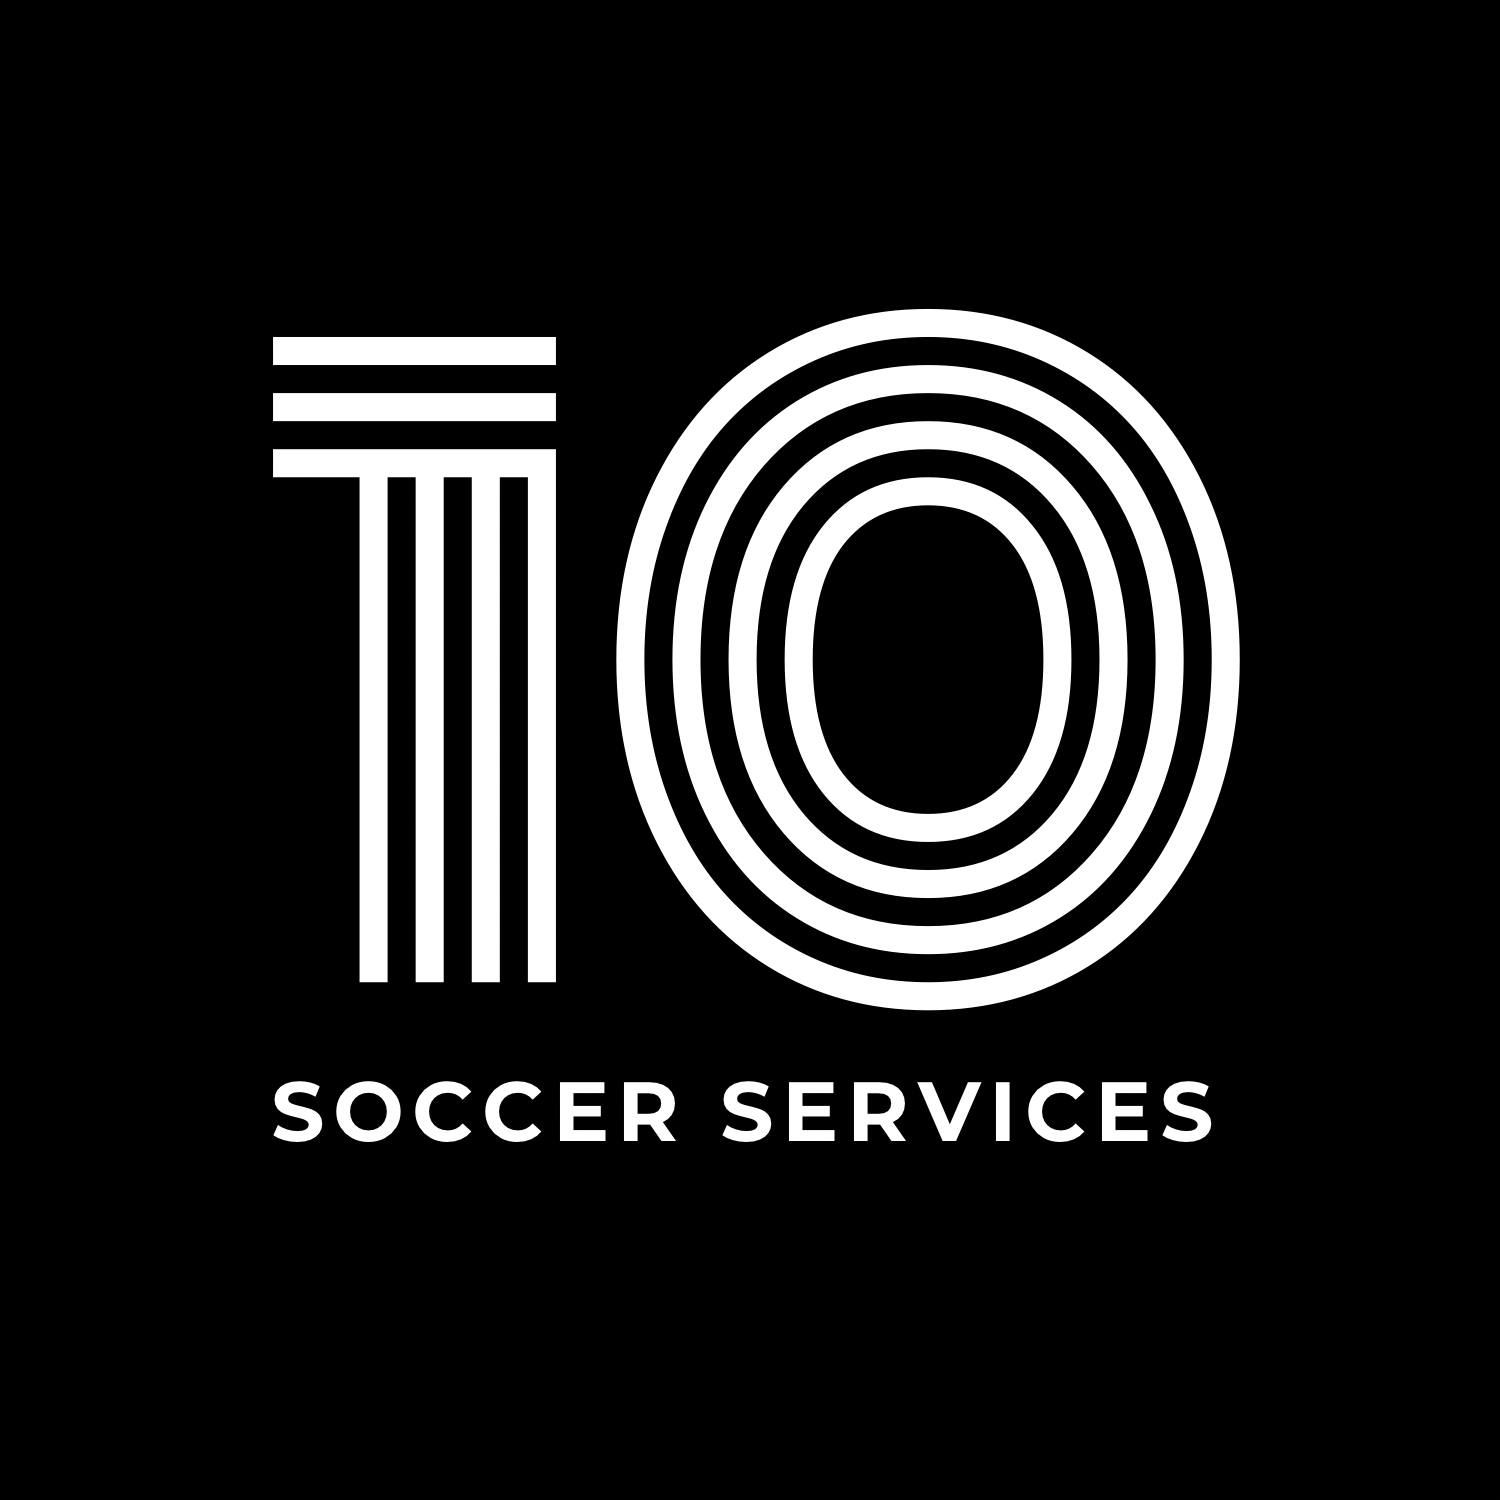 10 soccer services logo